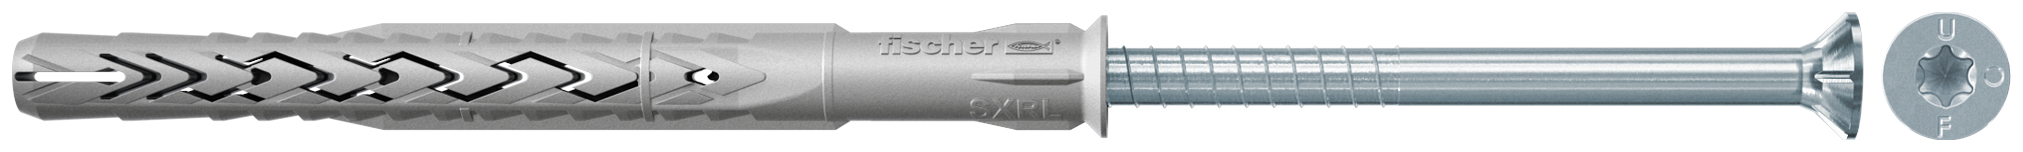 fischer Tasselli prolungati SXRL 8x160 T (1 Pz.) Tassello prolungato in nylon con marcatura CE con vite premontata T.S.P. impronta torx.